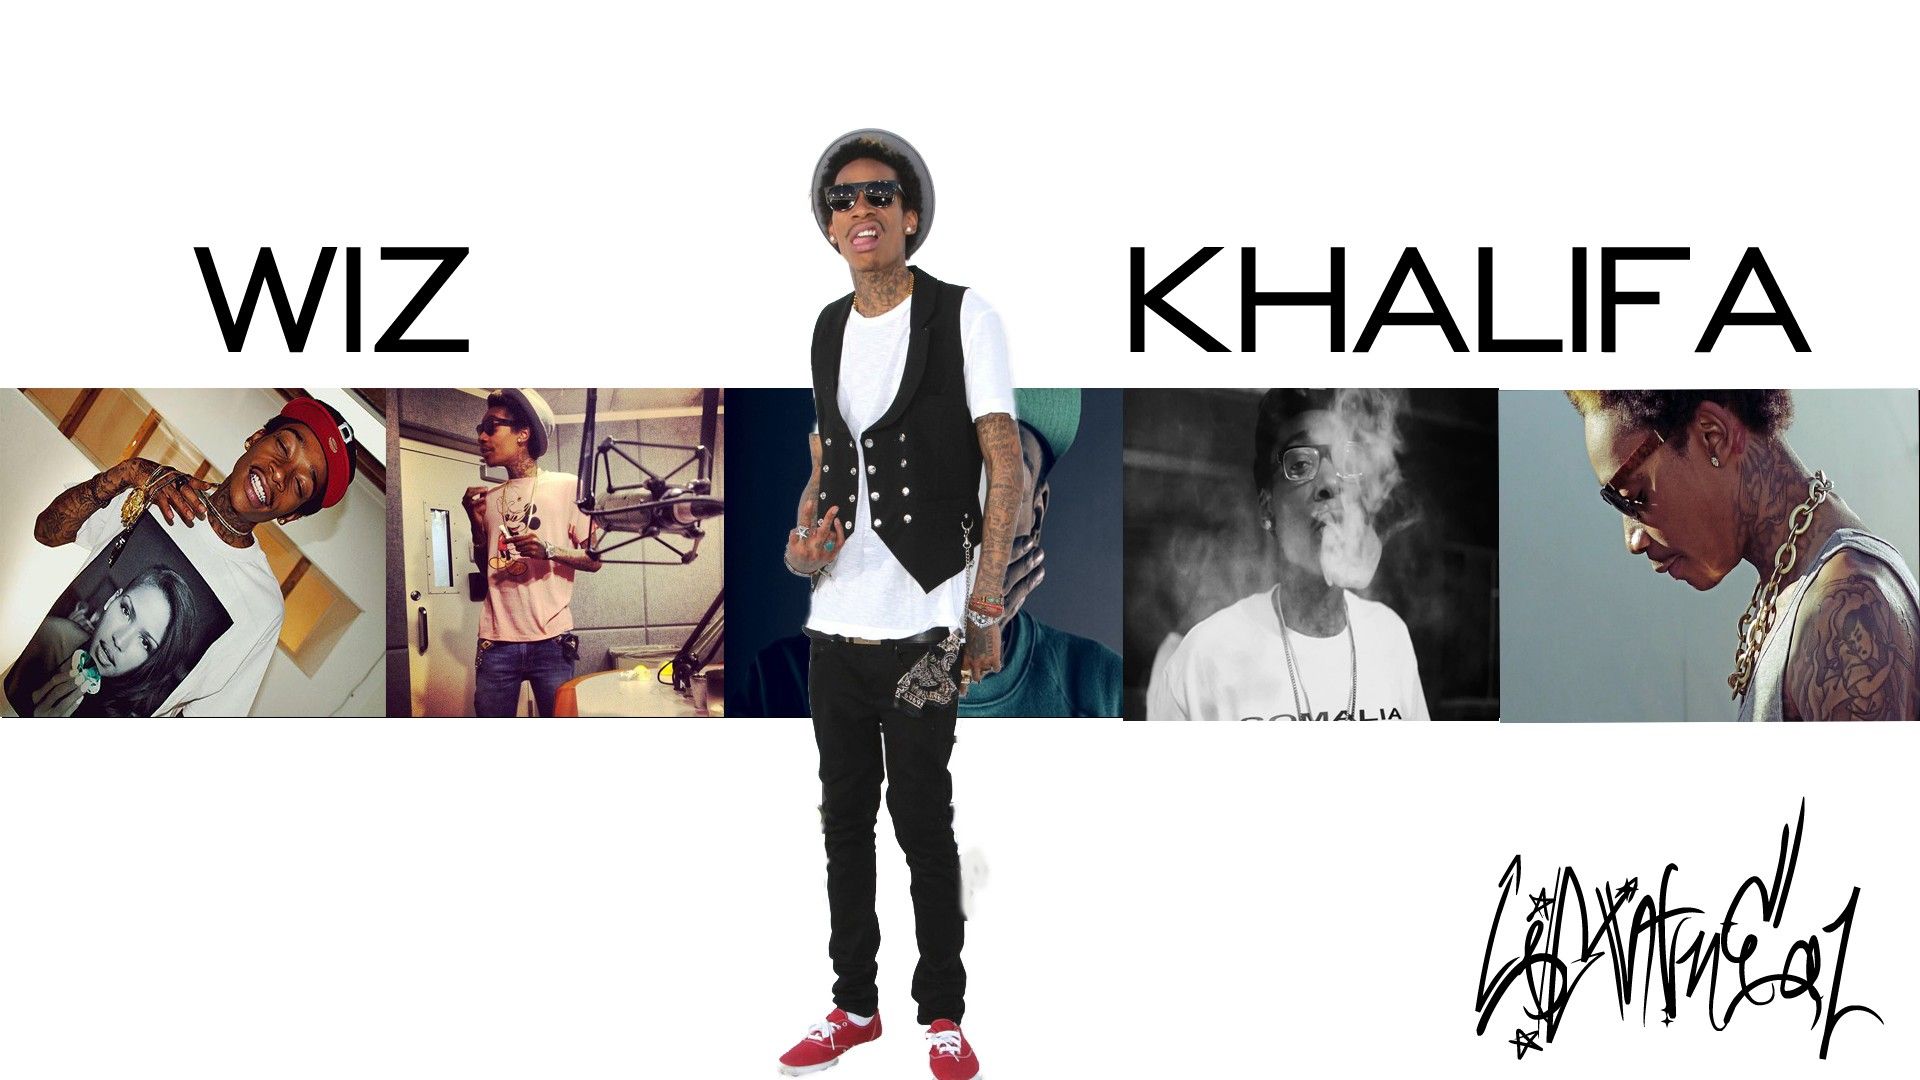 Wiz Khalifa Background Picture Image